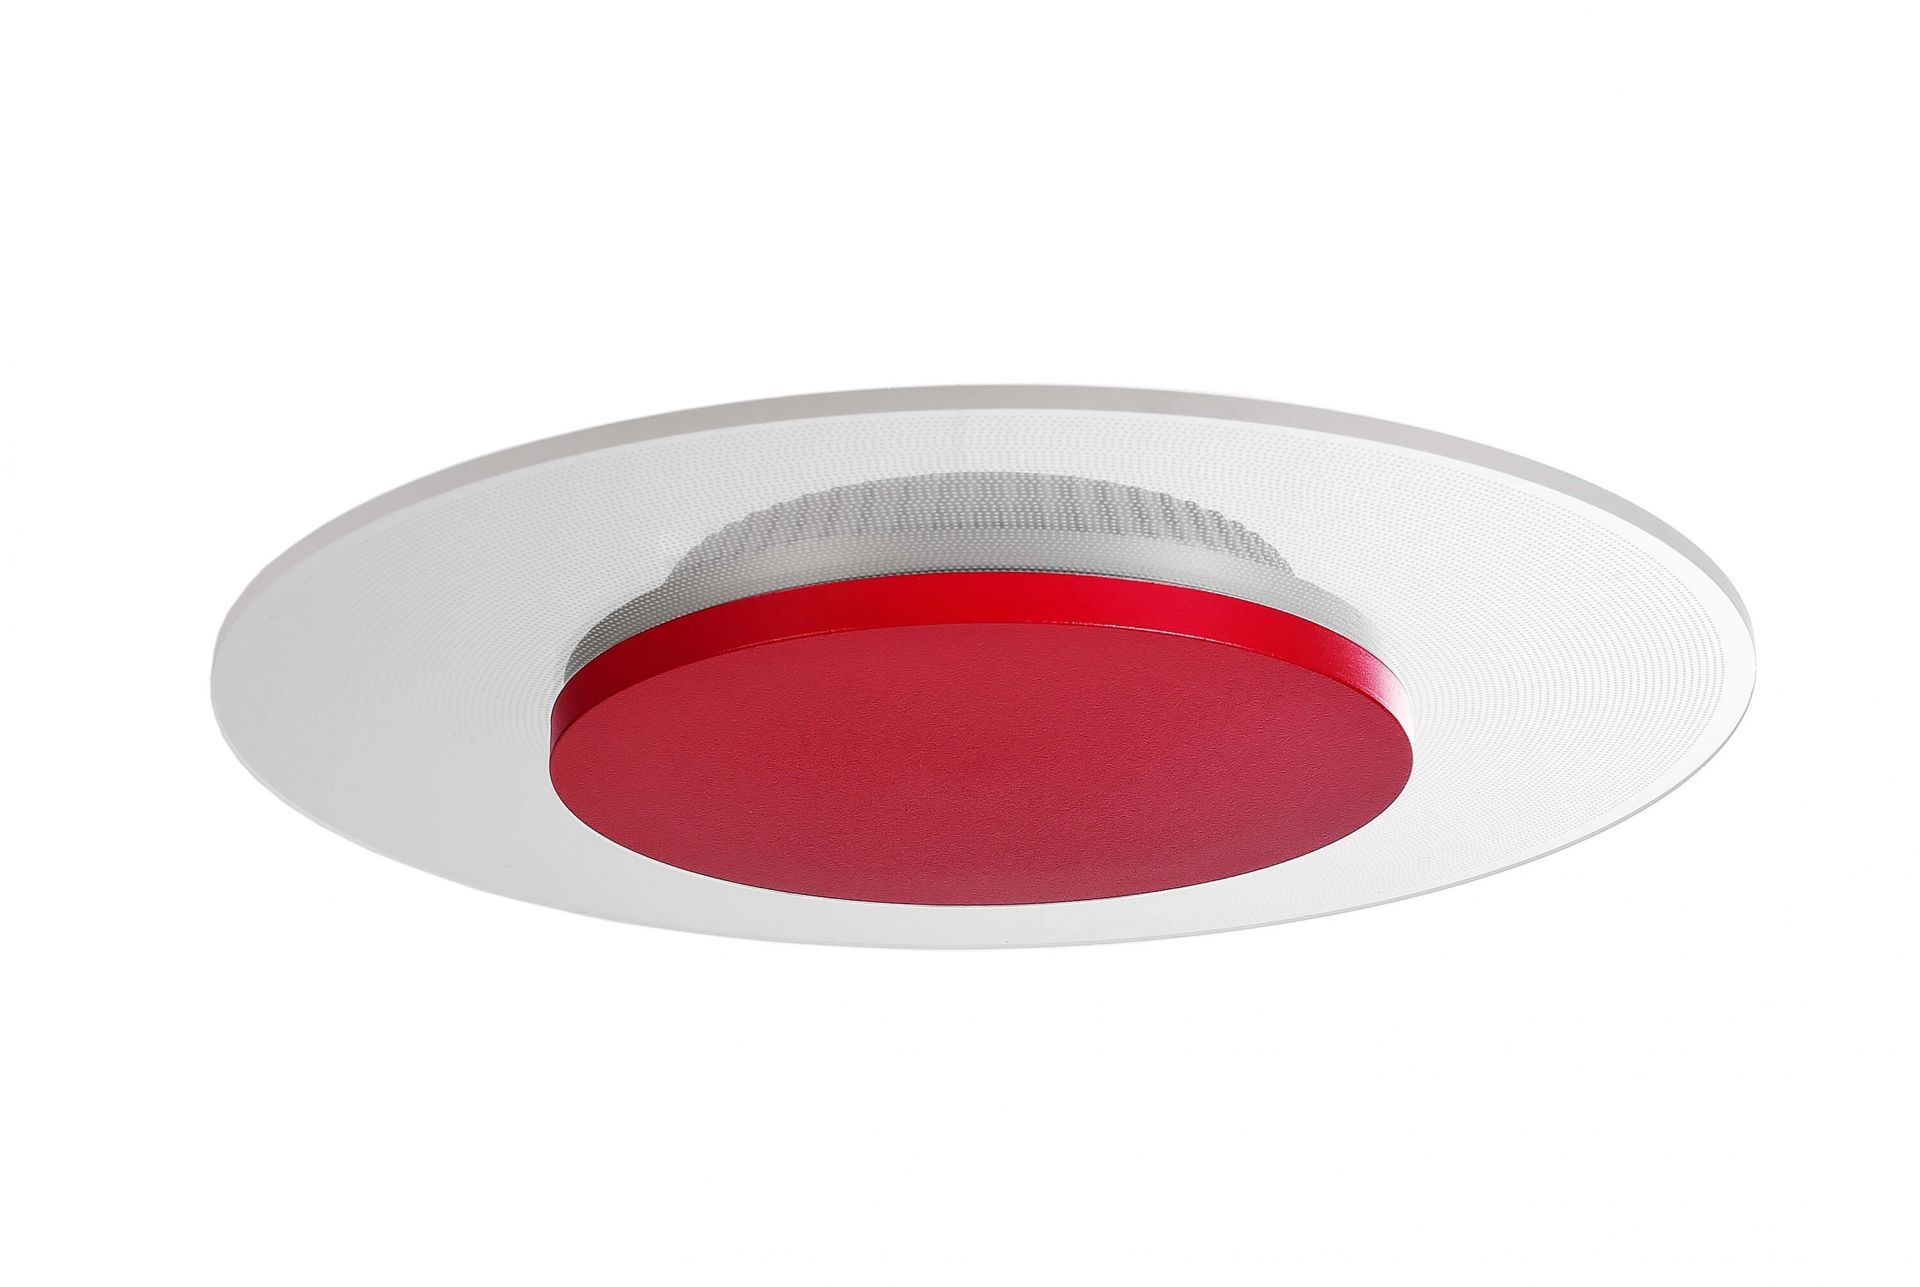 Потолочный светильник Zaniah 12W накладка рубиново-красный Deko-Light 620036 620036